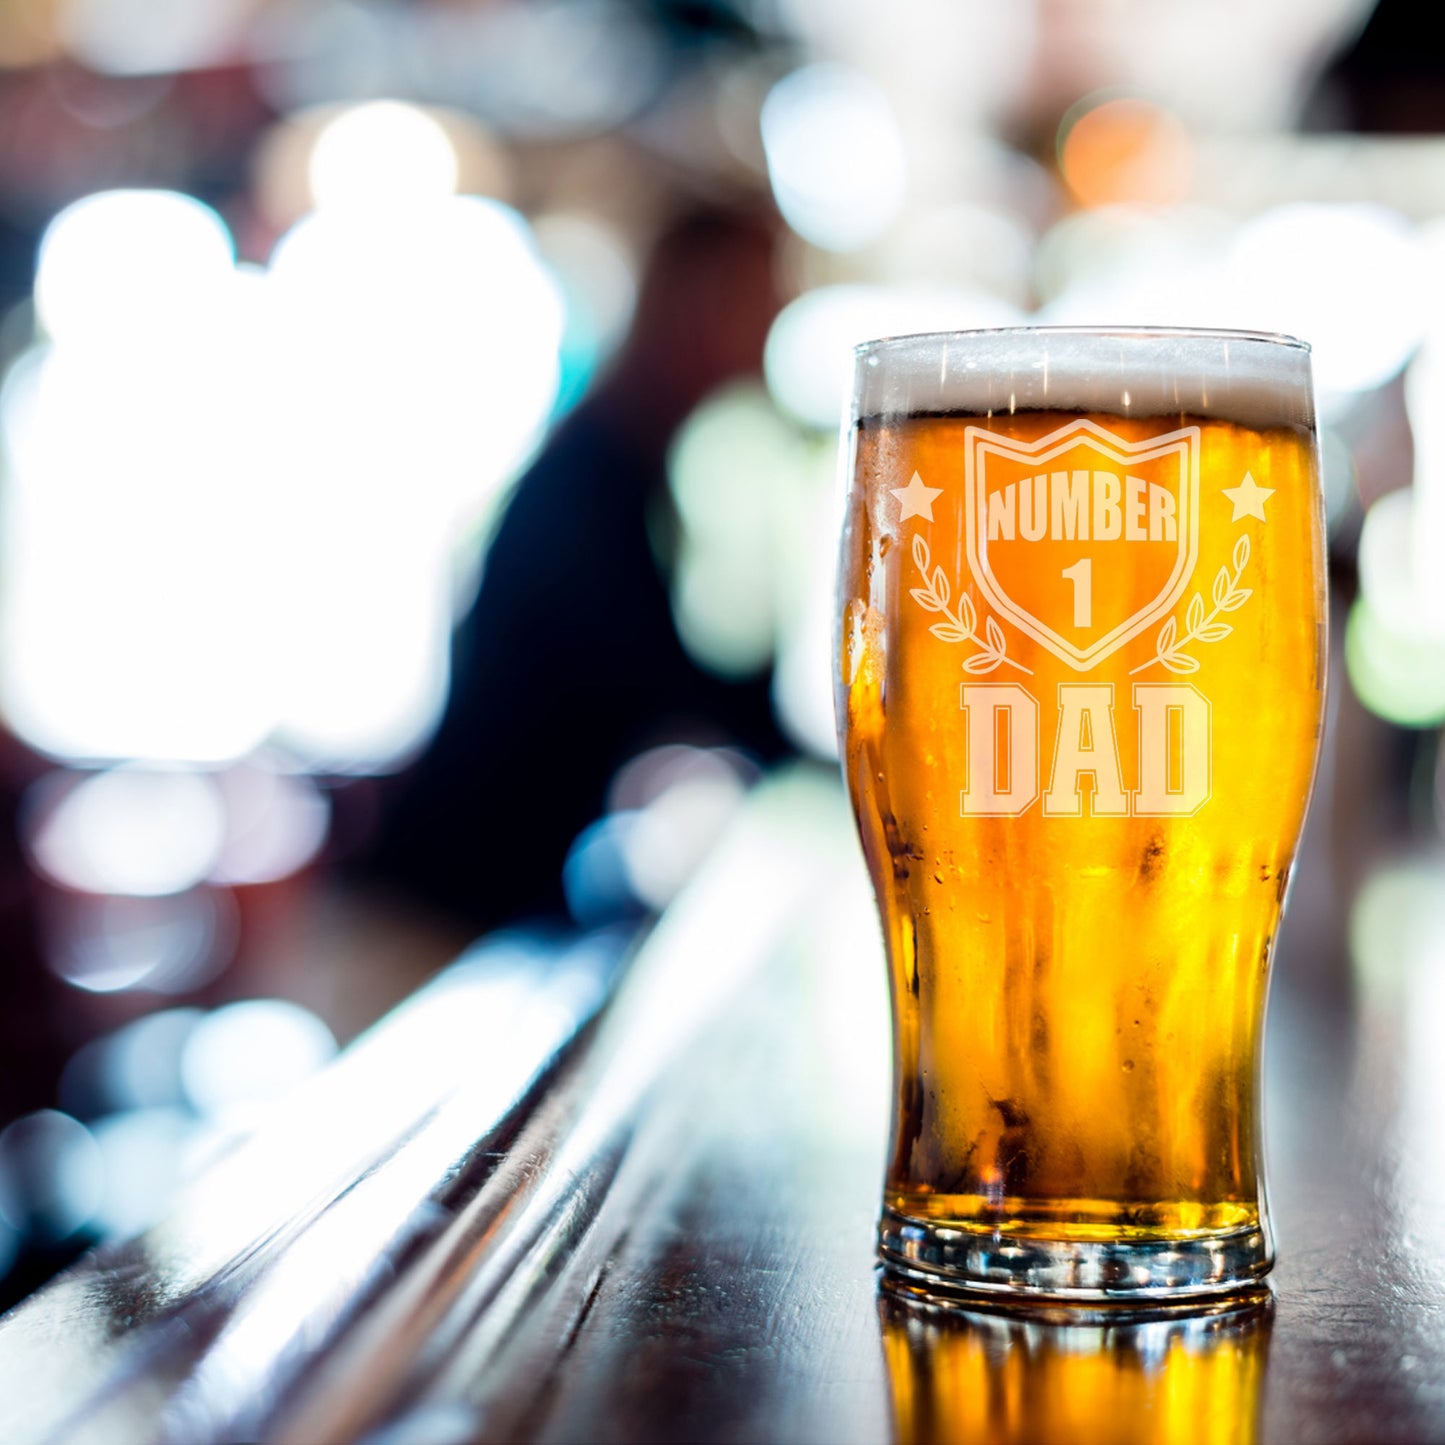 Number 1 Dad Engraved Beer Pint Glass  - Always Looking Good -   